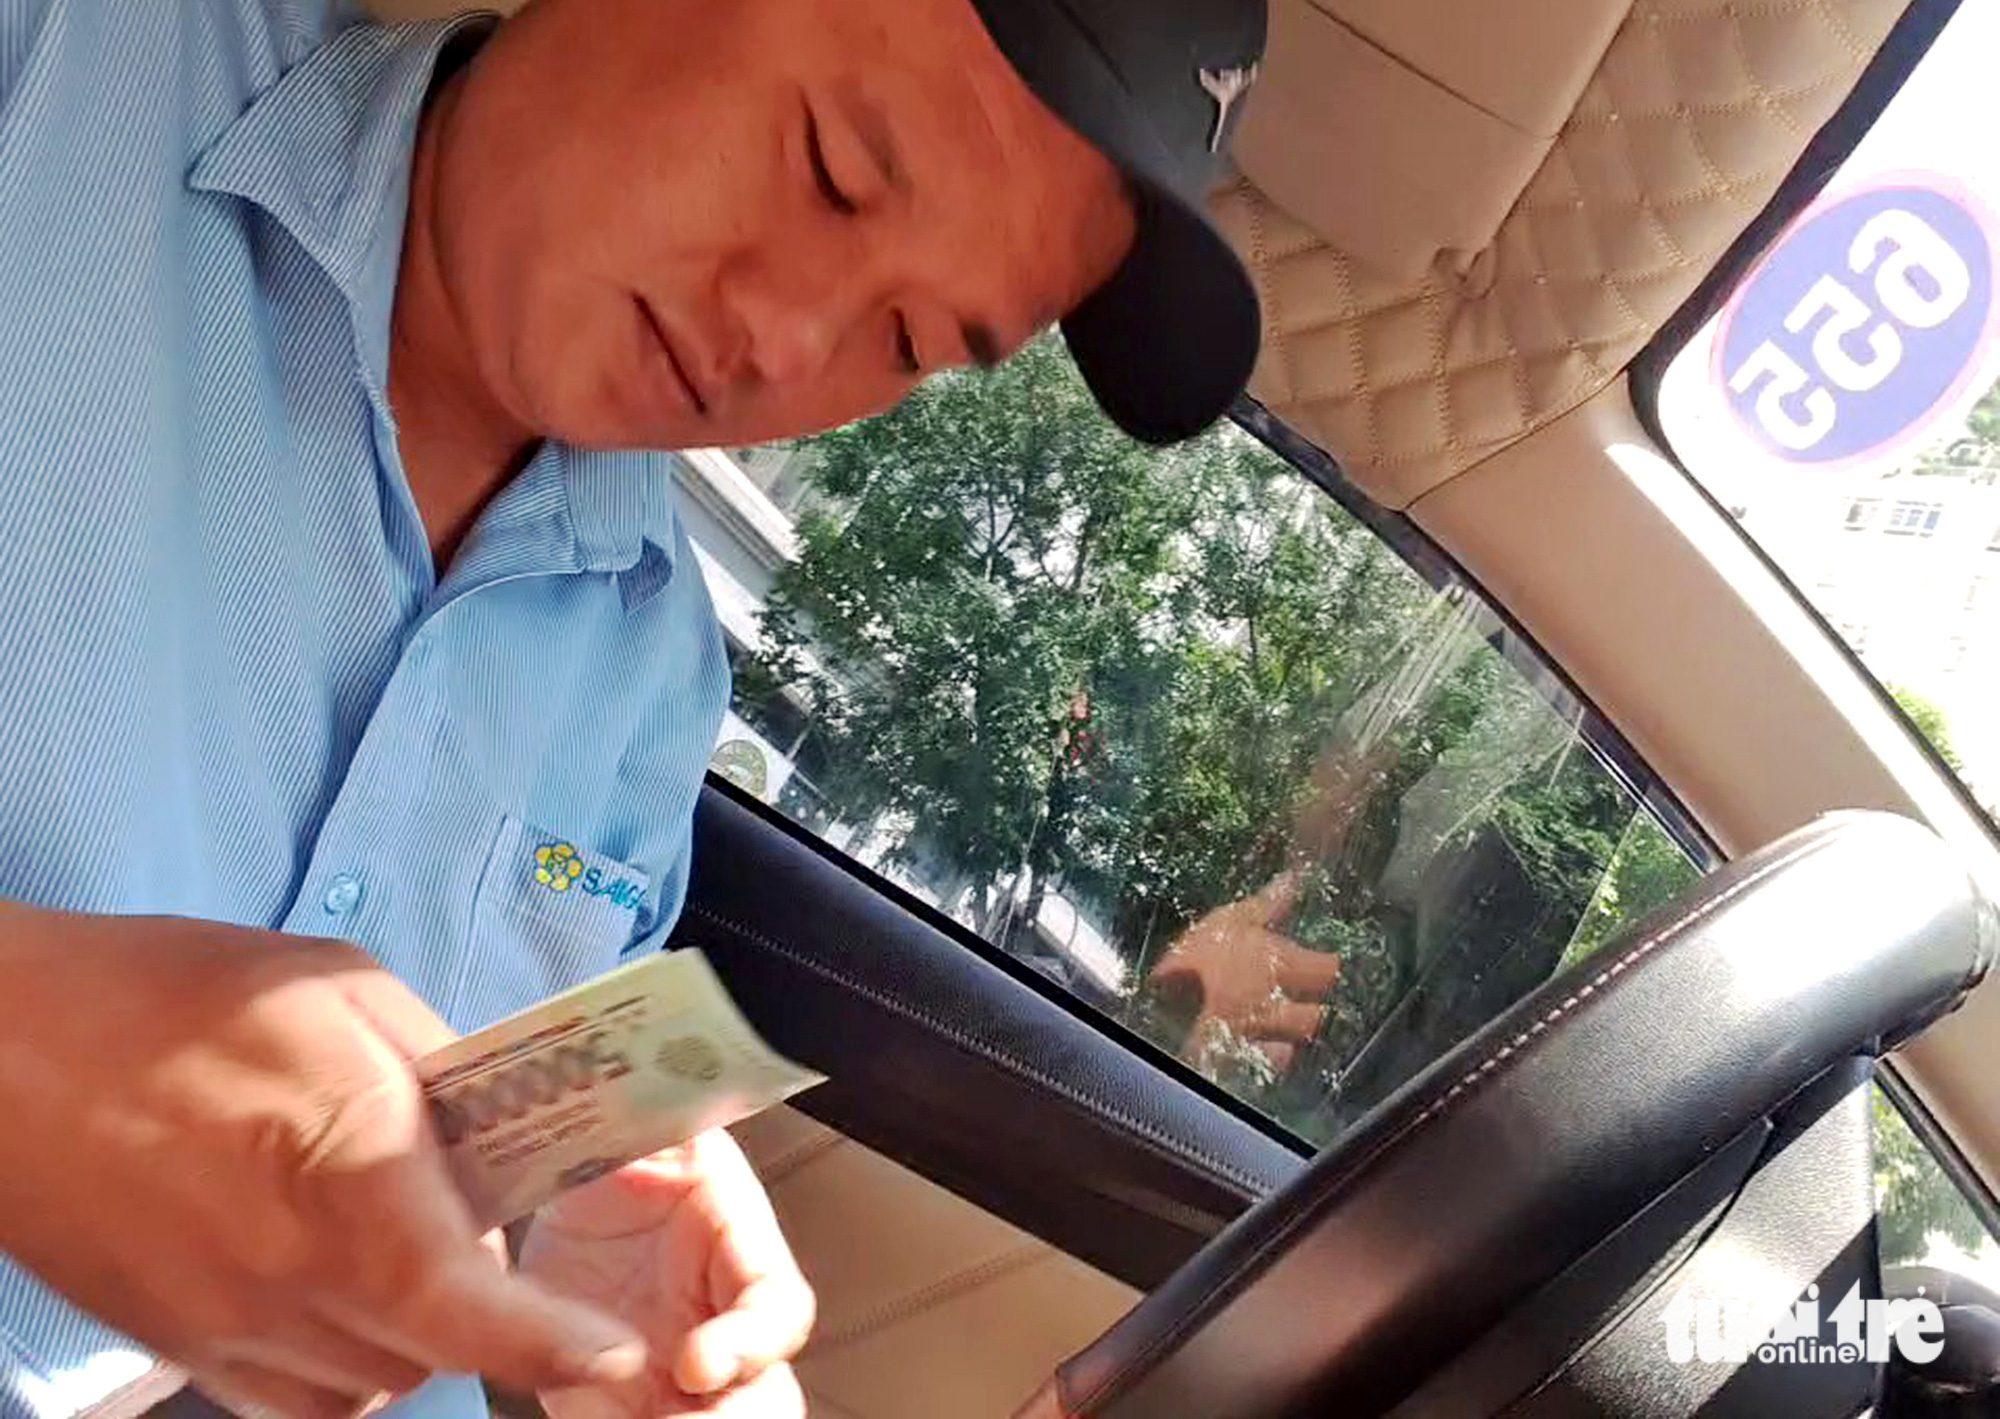 Minh lấy 1,2 triệu đồng với cuốc taxi chưa tới 15,5km - Ảnh: cắt từ video